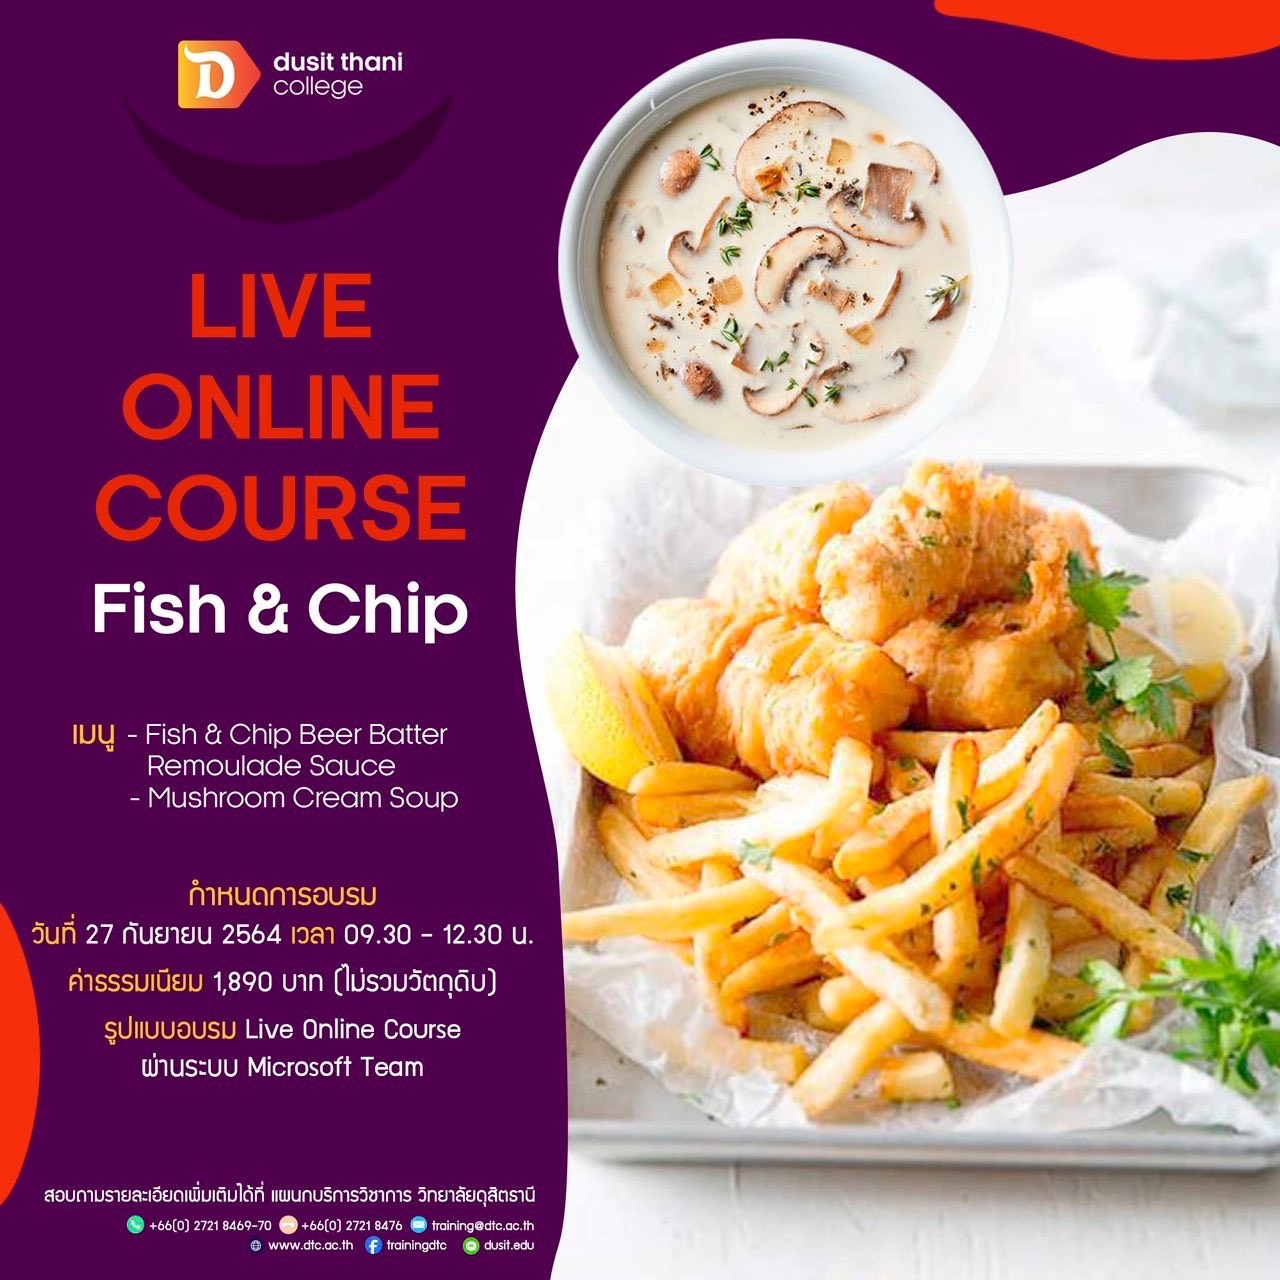 พบกับหลักสูตร Fish and Chip รูปแบบ Live online course